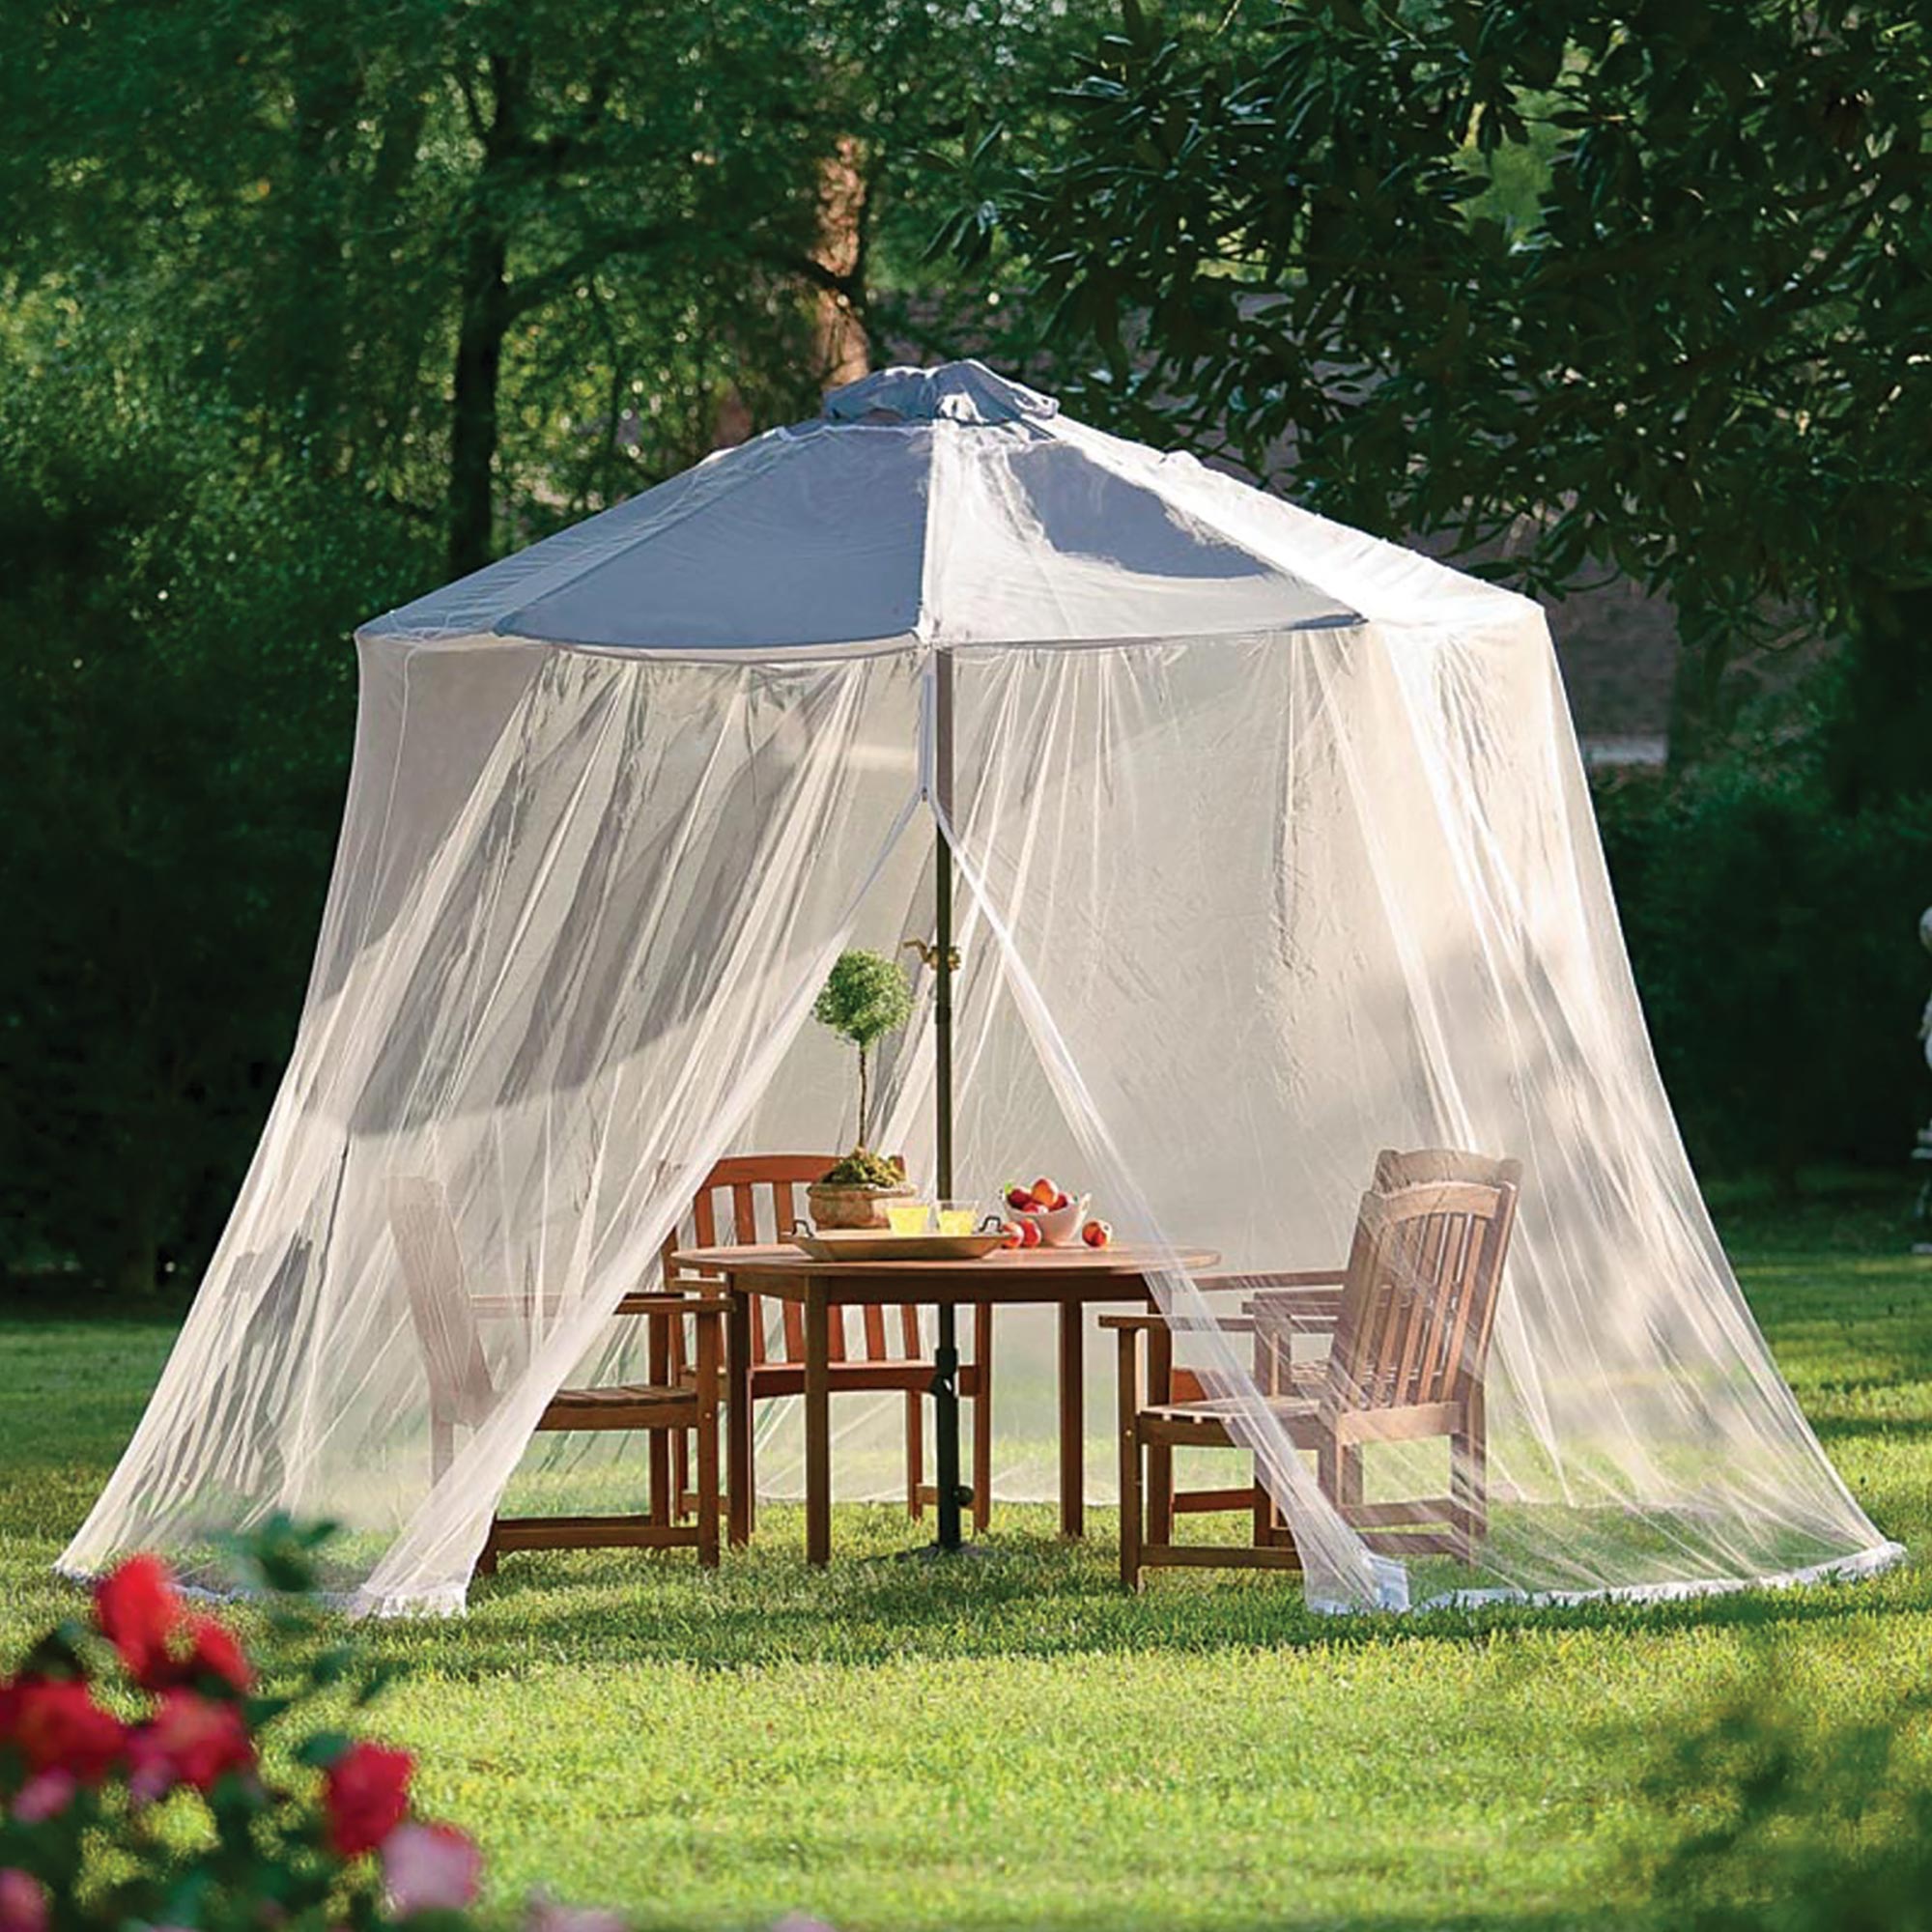 Как выбрать идеальный тент или шатер для отдыха на природе